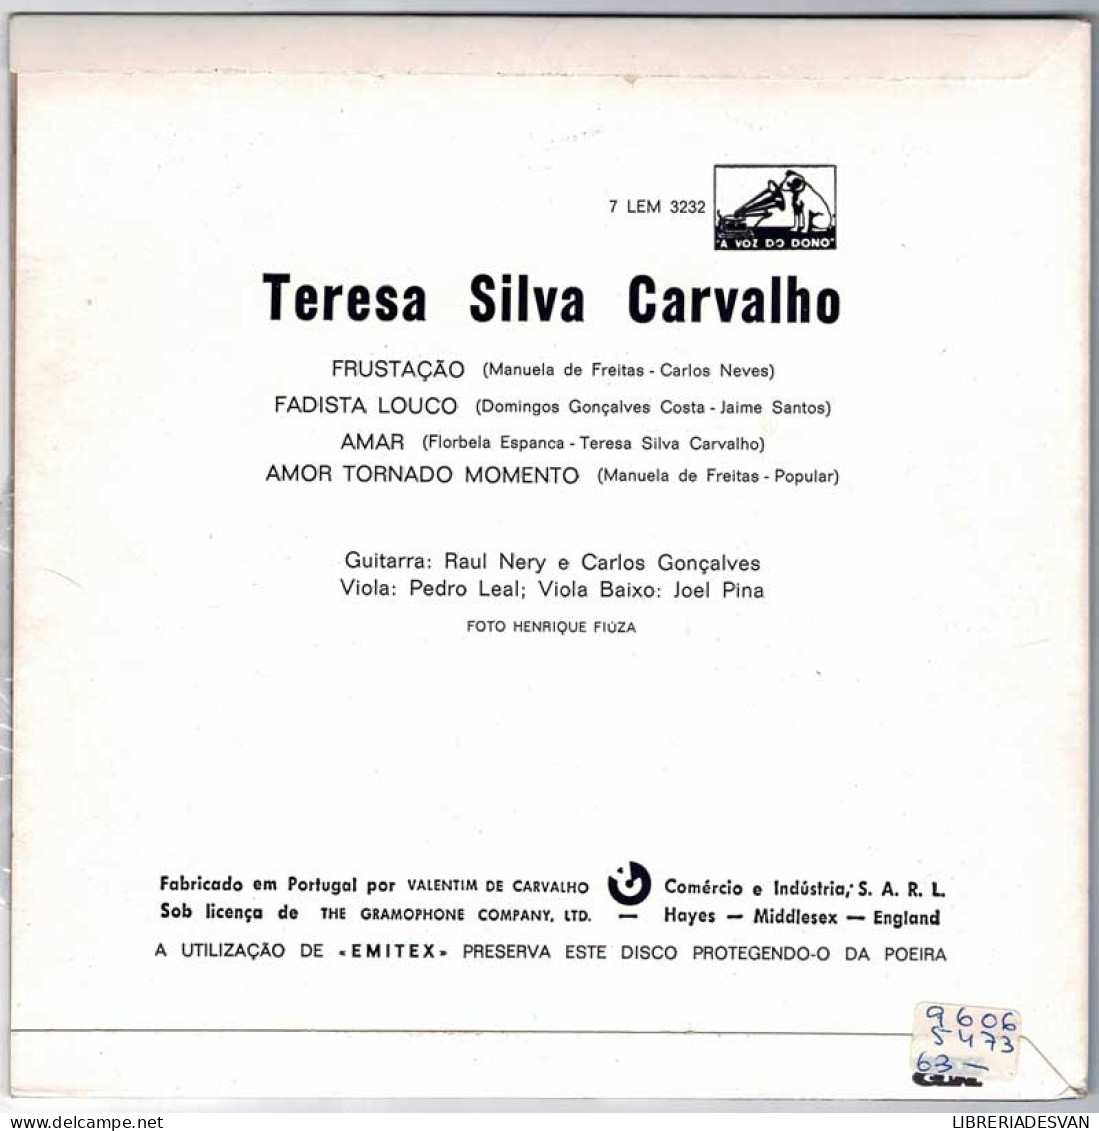 Teresa Silva Carvalho - Amor Tornado Momento. Amar. Frustraçao. Fadista Louco. EP - Ohne Zuordnung